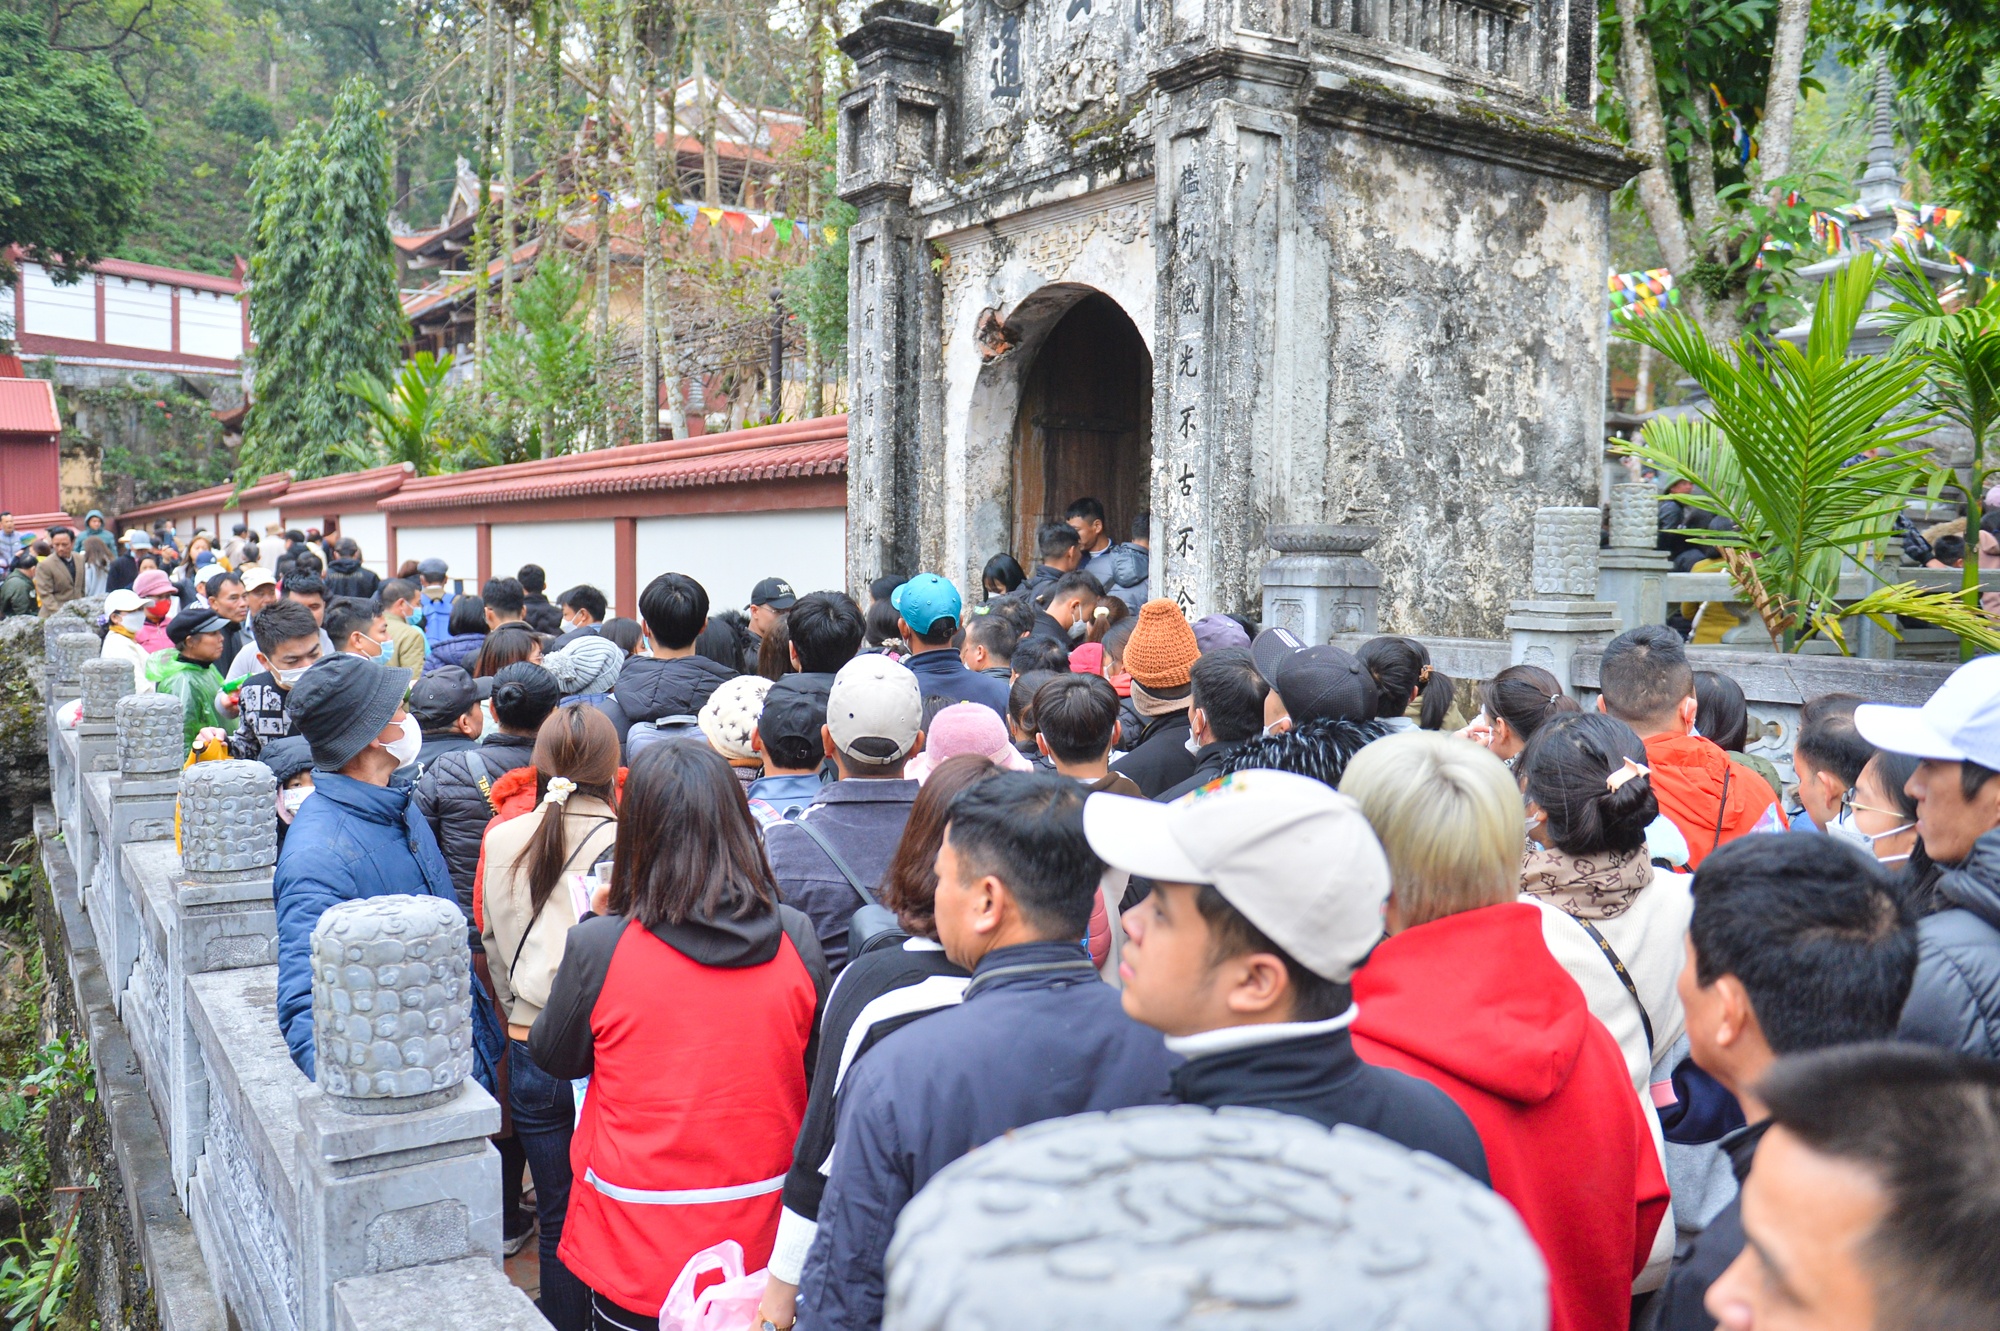 Hàng vạn người đổ về chùa Hương trong ngày khai hội - ảnh 6